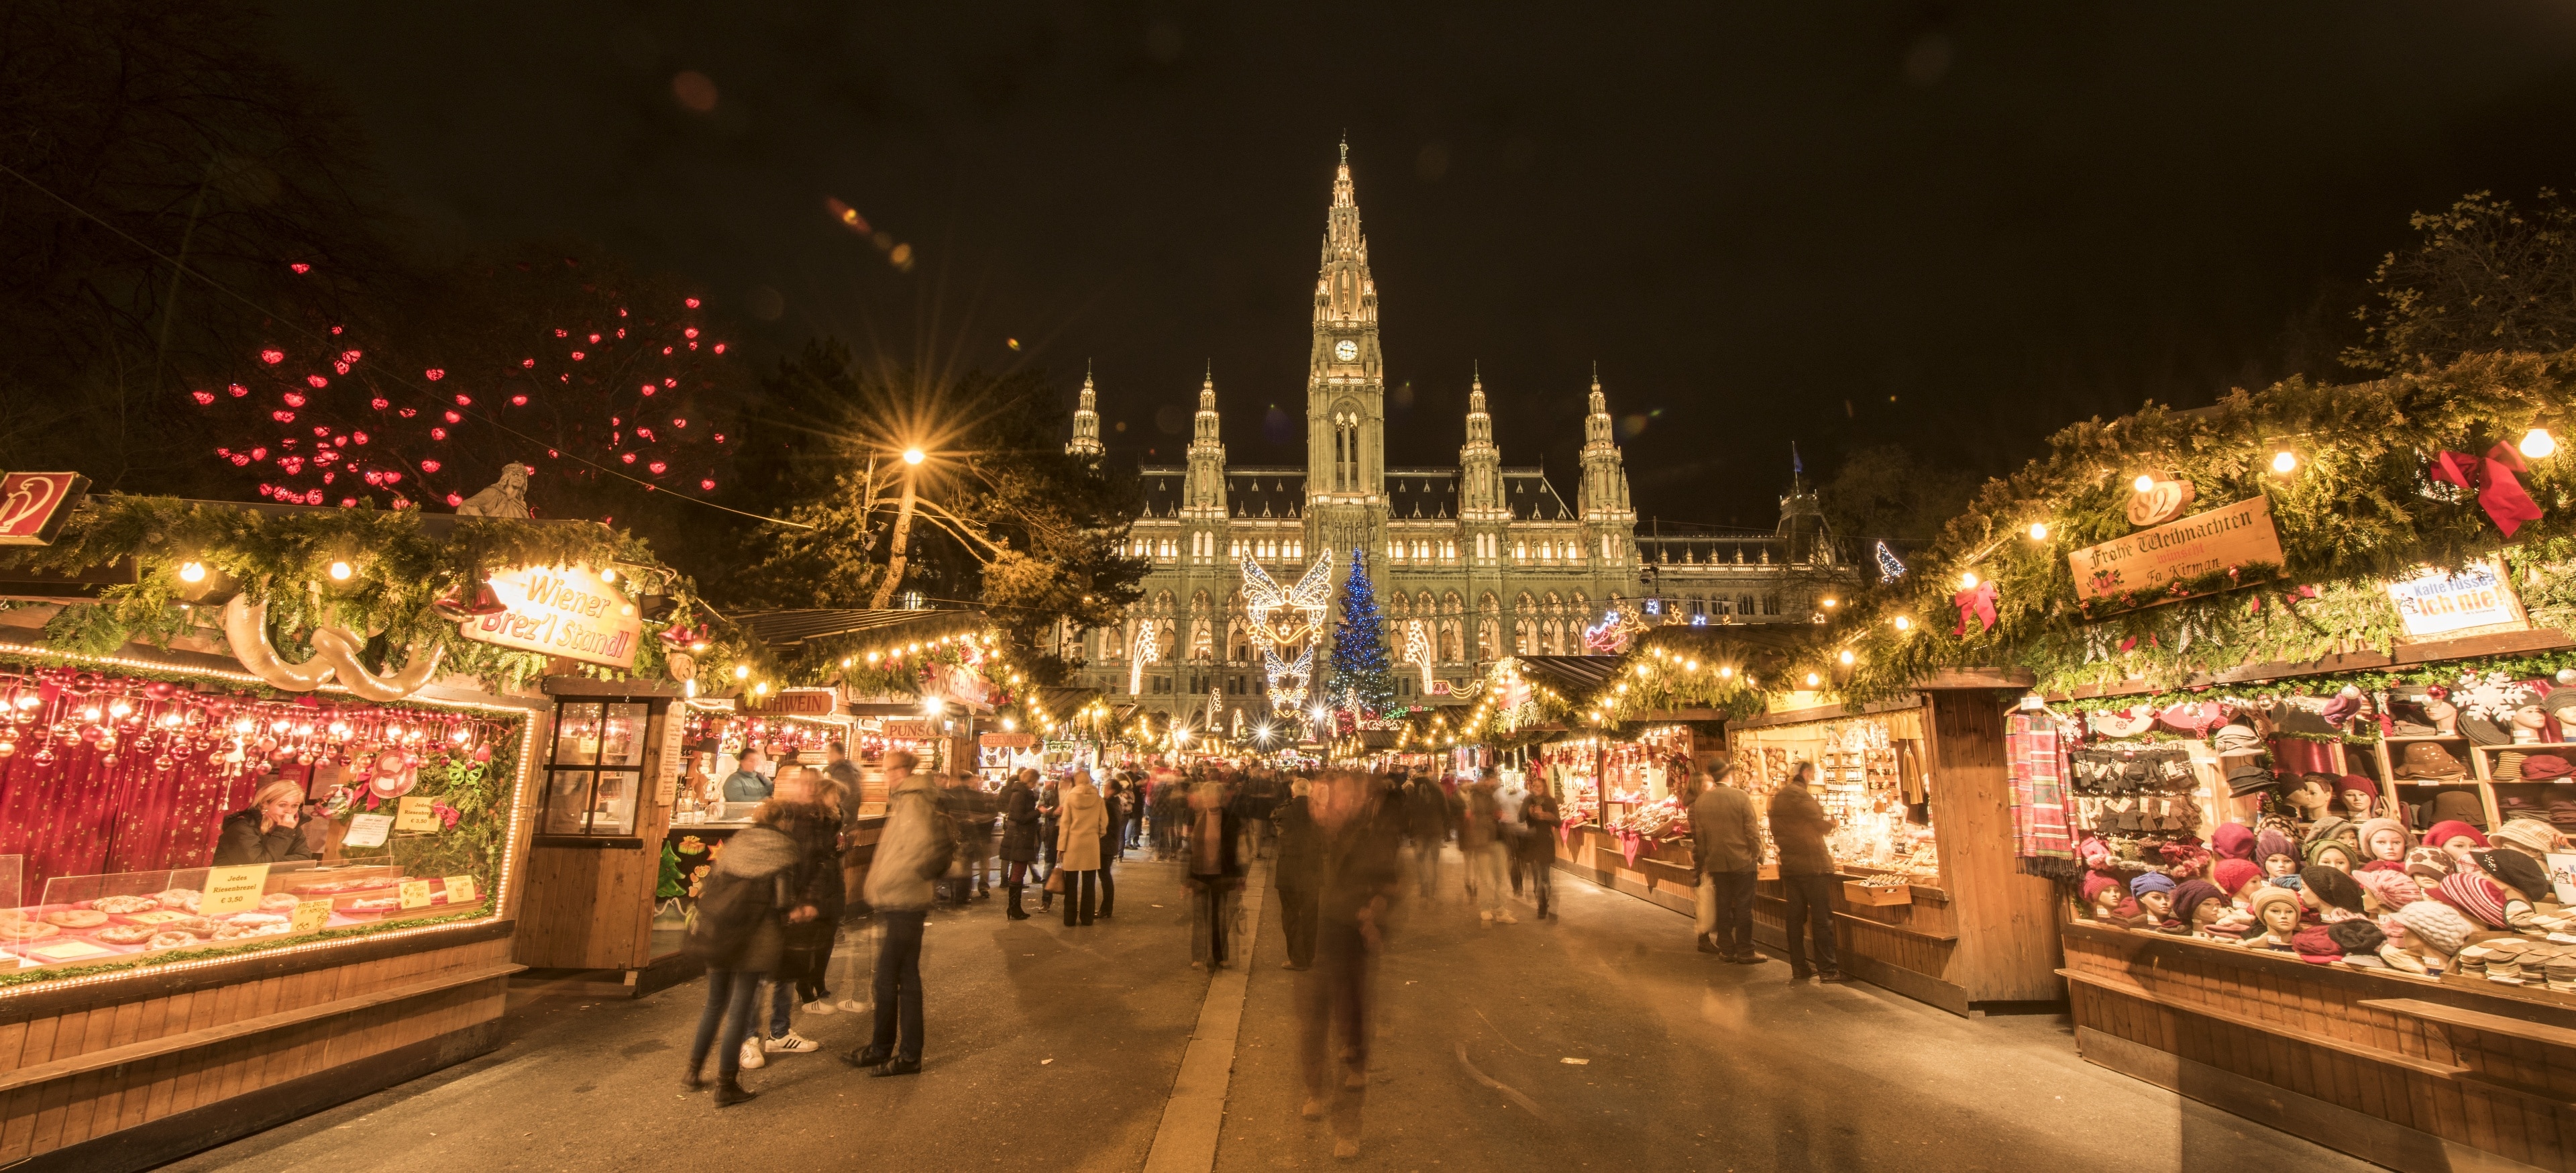 Wanneer je een kijkje neemt in Vienna Christmas market, een populair shopgebied in Wenen, kun je de perfecte souvenirs vinden om mee naar huis te nemen. Er gaat niets boven de fascinerende musea en de lokale kunst in dit gebied! 